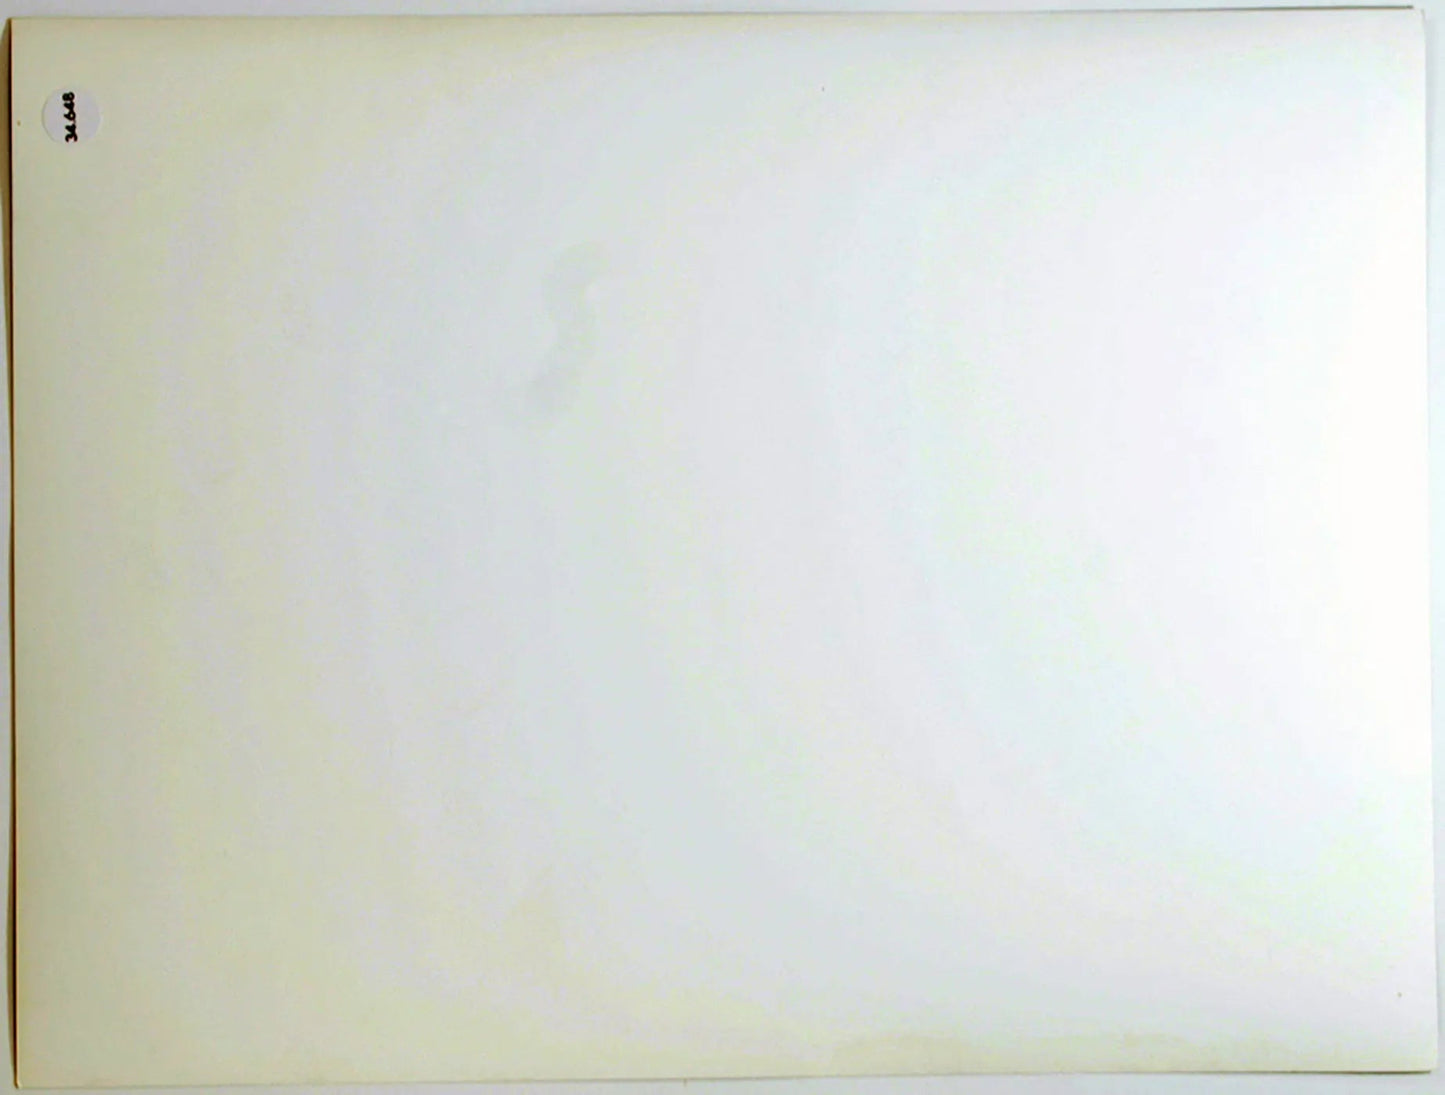 Woody Allen Film Il Prestanome 1976 Ft 34648 - Stampa 24x18 cm - Farabola Stampa ai sali d'argento